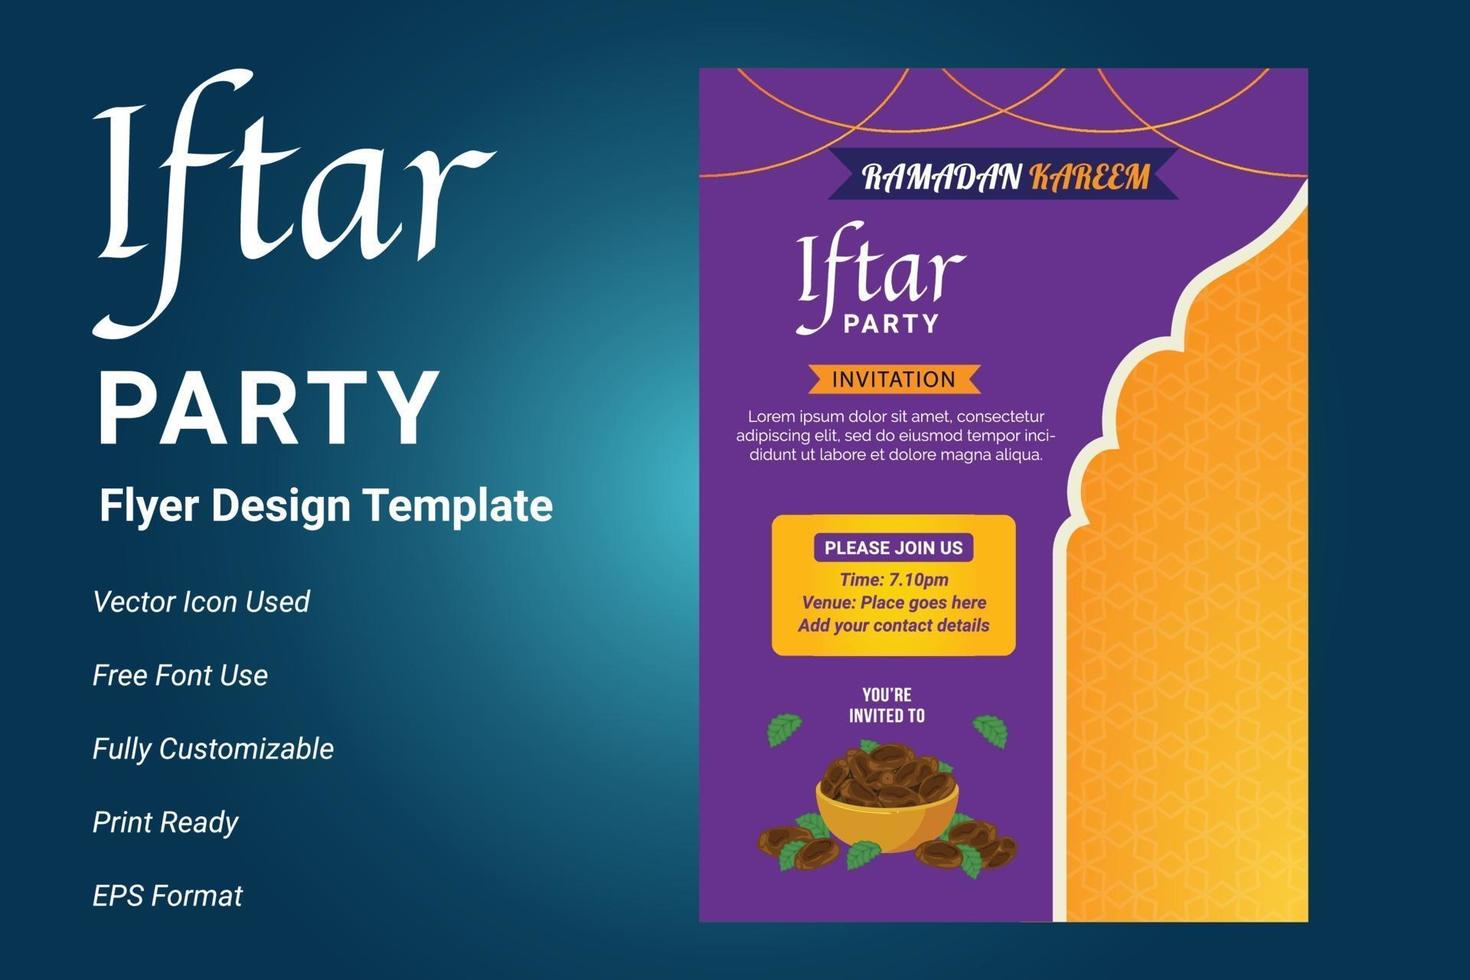 conception de flyer invitation fête ifter. dépliant du ramadan pour la fête d'ifter vecteur